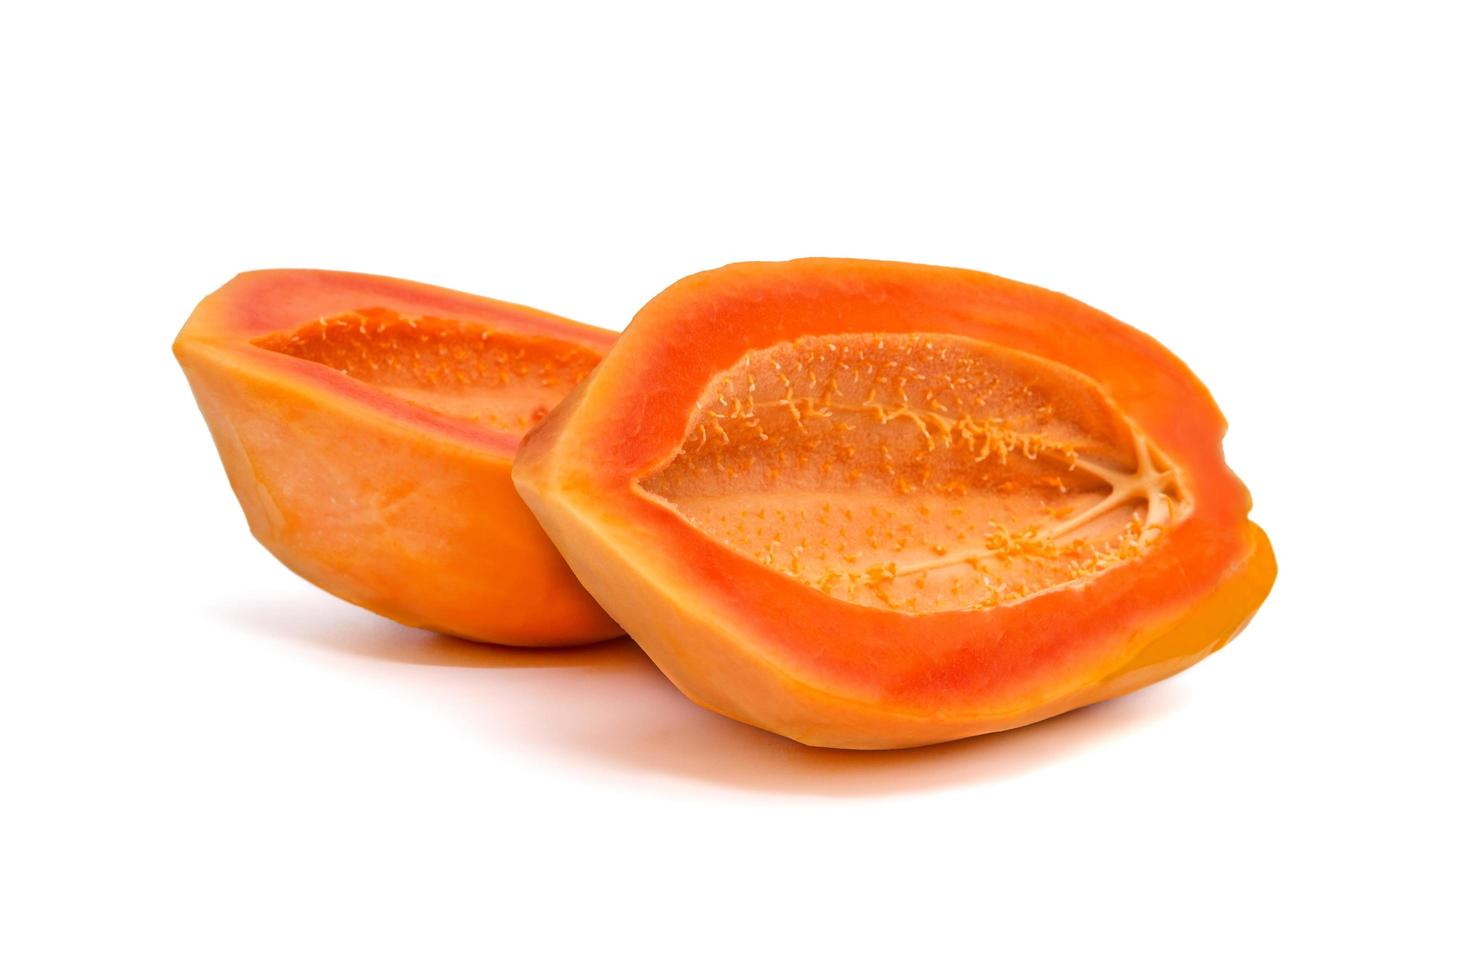 half cut ripe papaya seedless isolated on white background photo